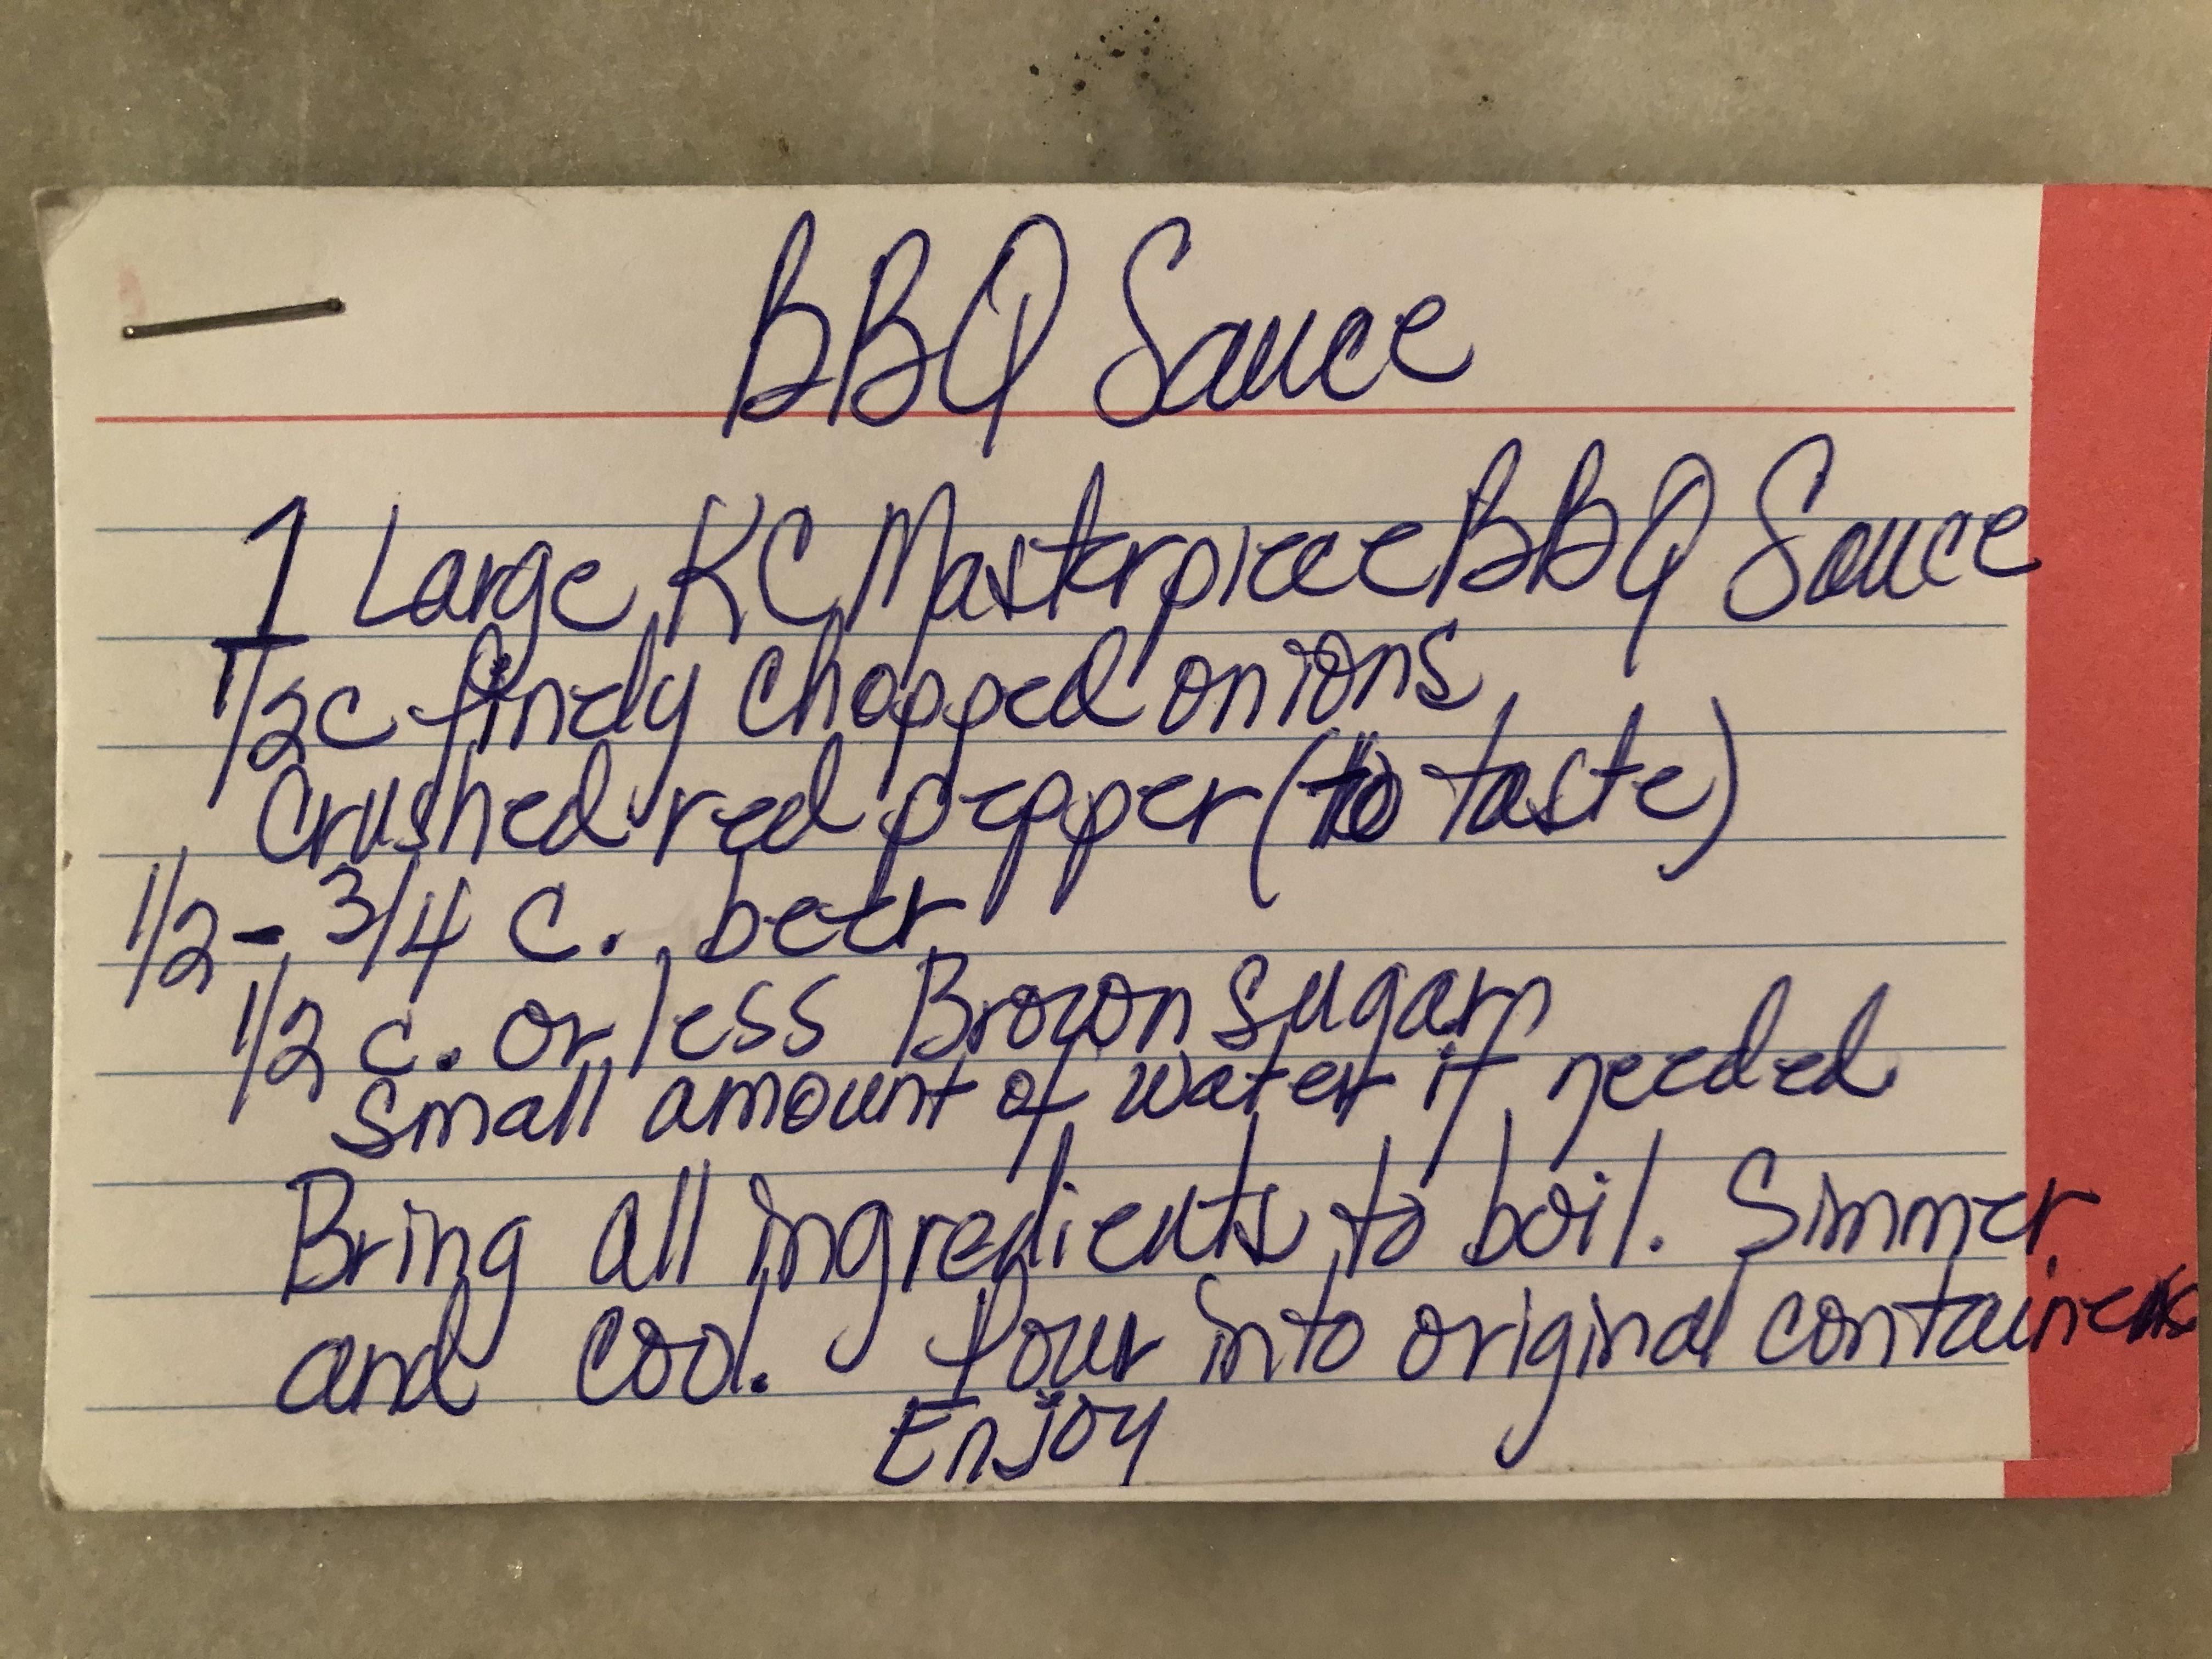 Adjusted BBQ Sauce (hand-written by Sandi Gant), part 1